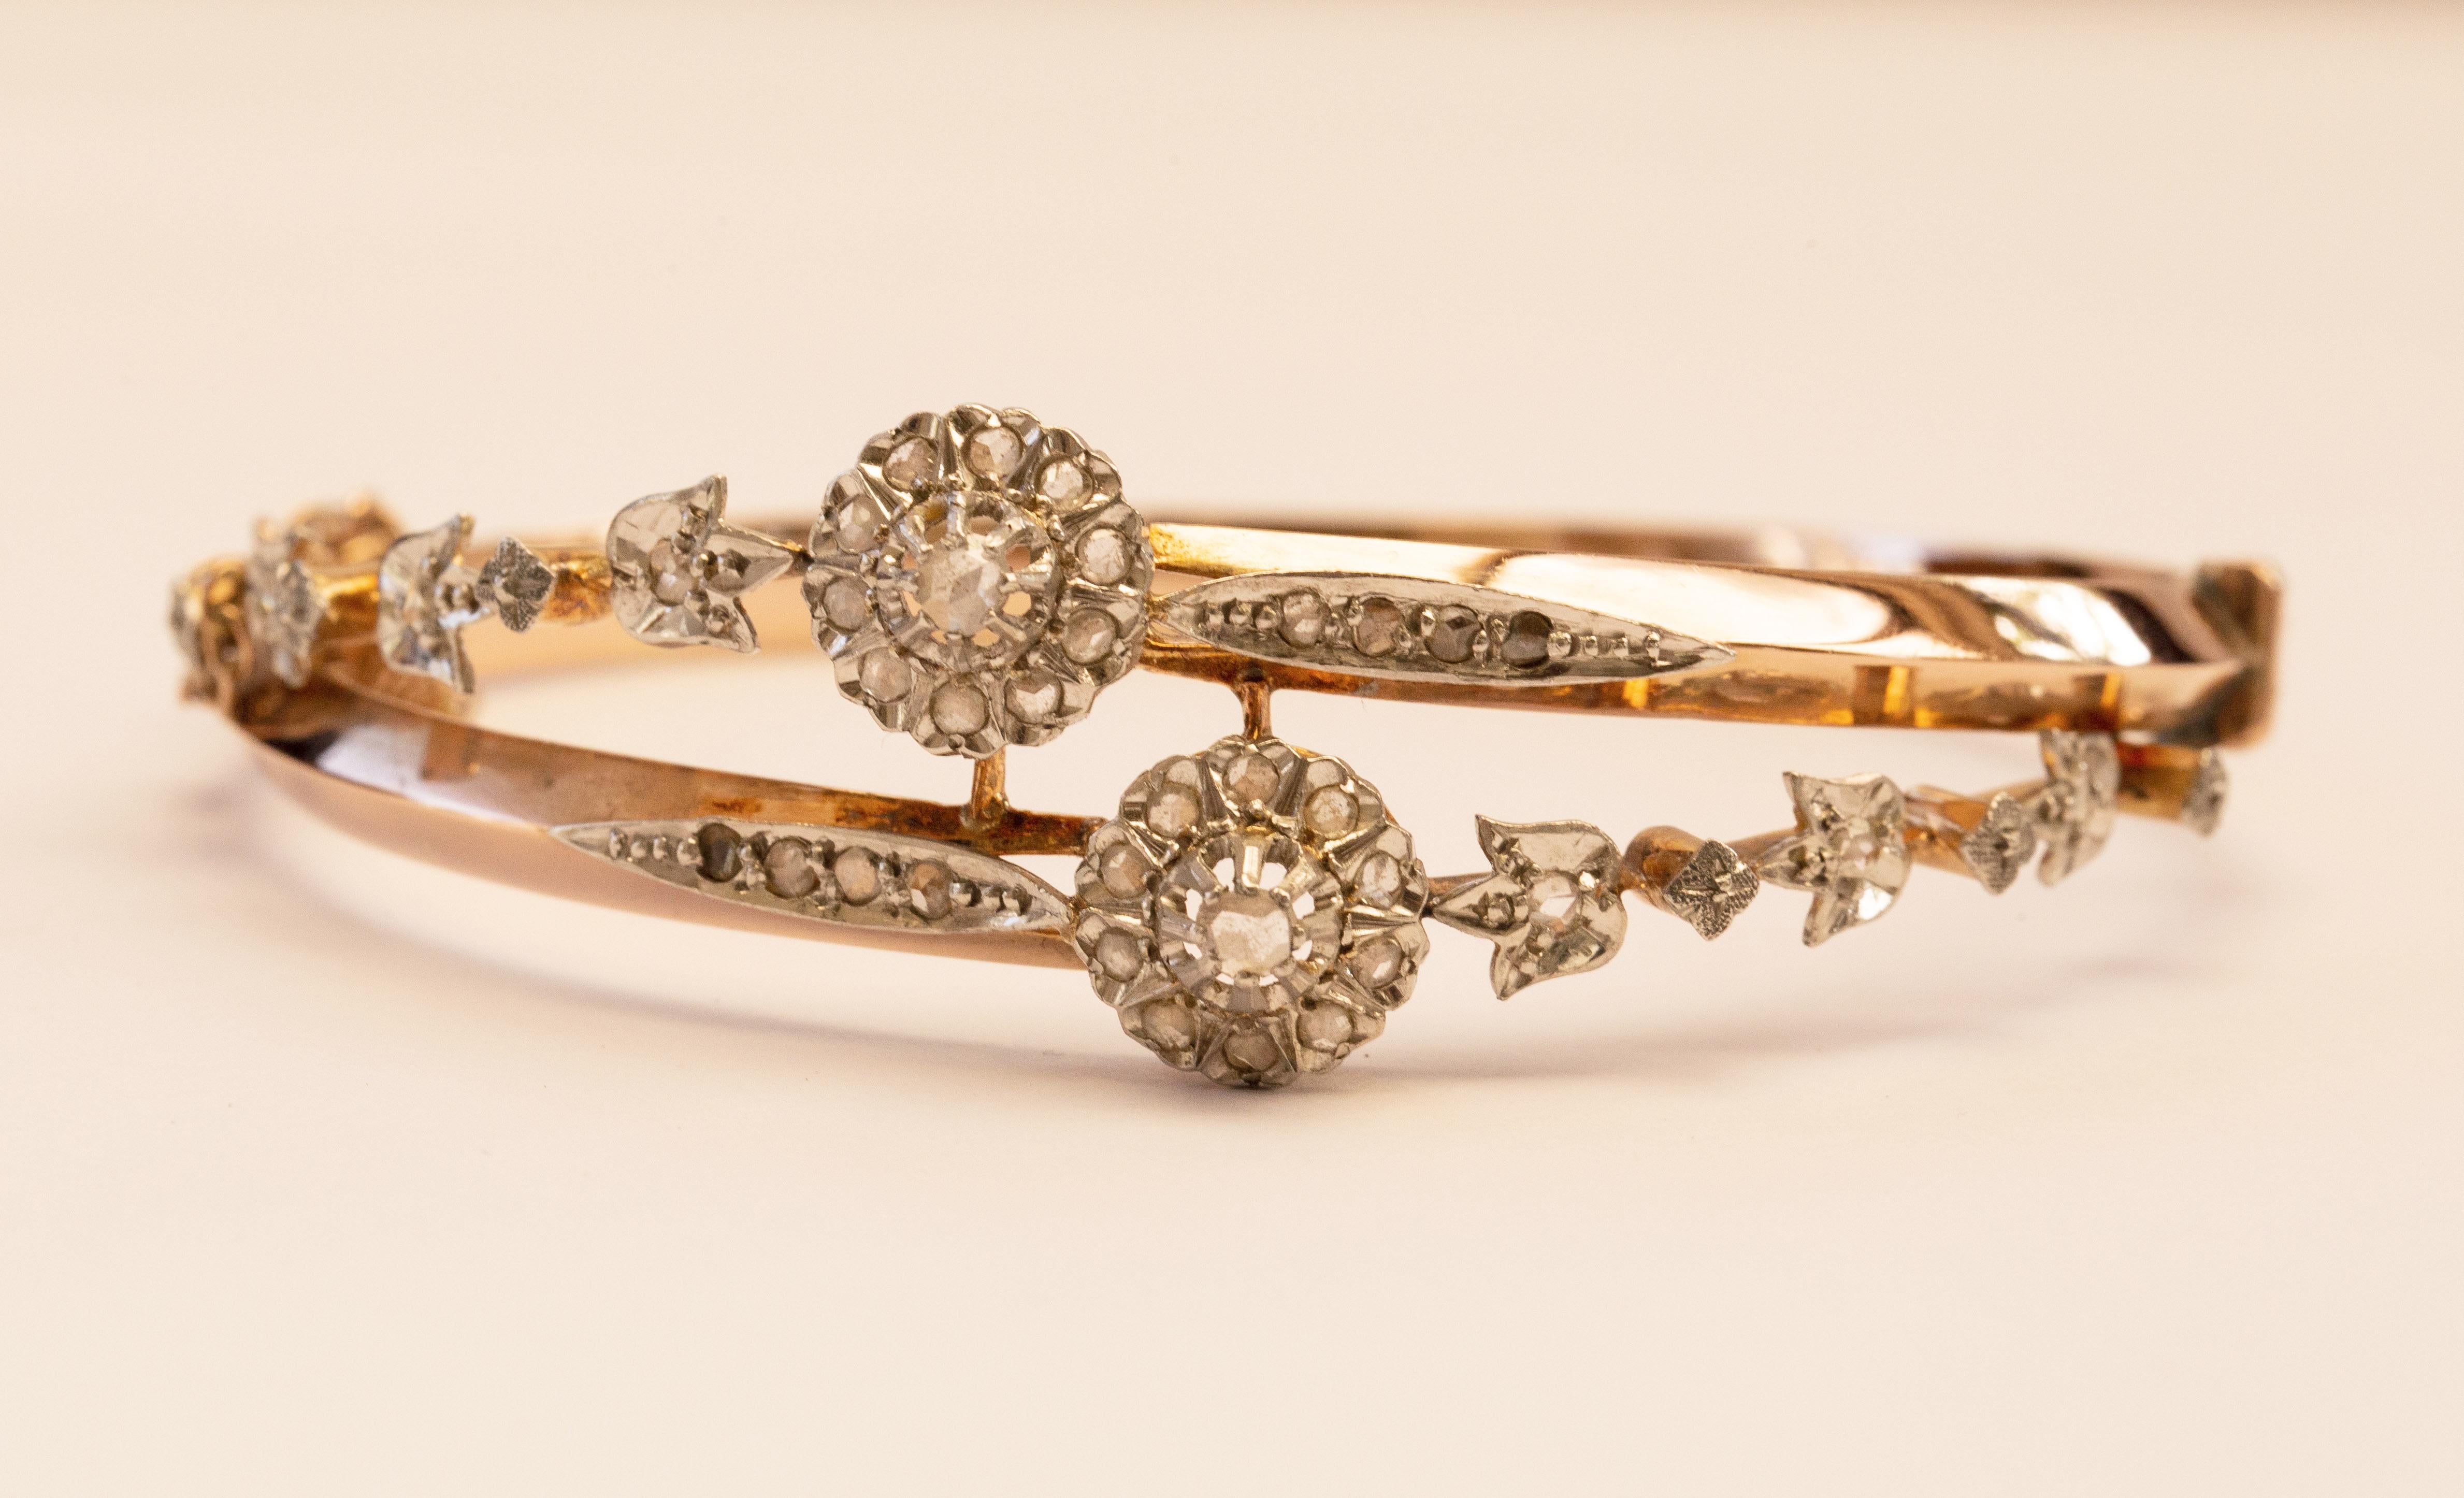 Bracelet ancien en or jaune 18 carats avec 36 diamants taillés en rose et sertis de platine, fabriqué vers 1900, très probablement en France. Le bracelet présente un décor floral. Le bracelet est délicat, mais il attire l'attention et serait une